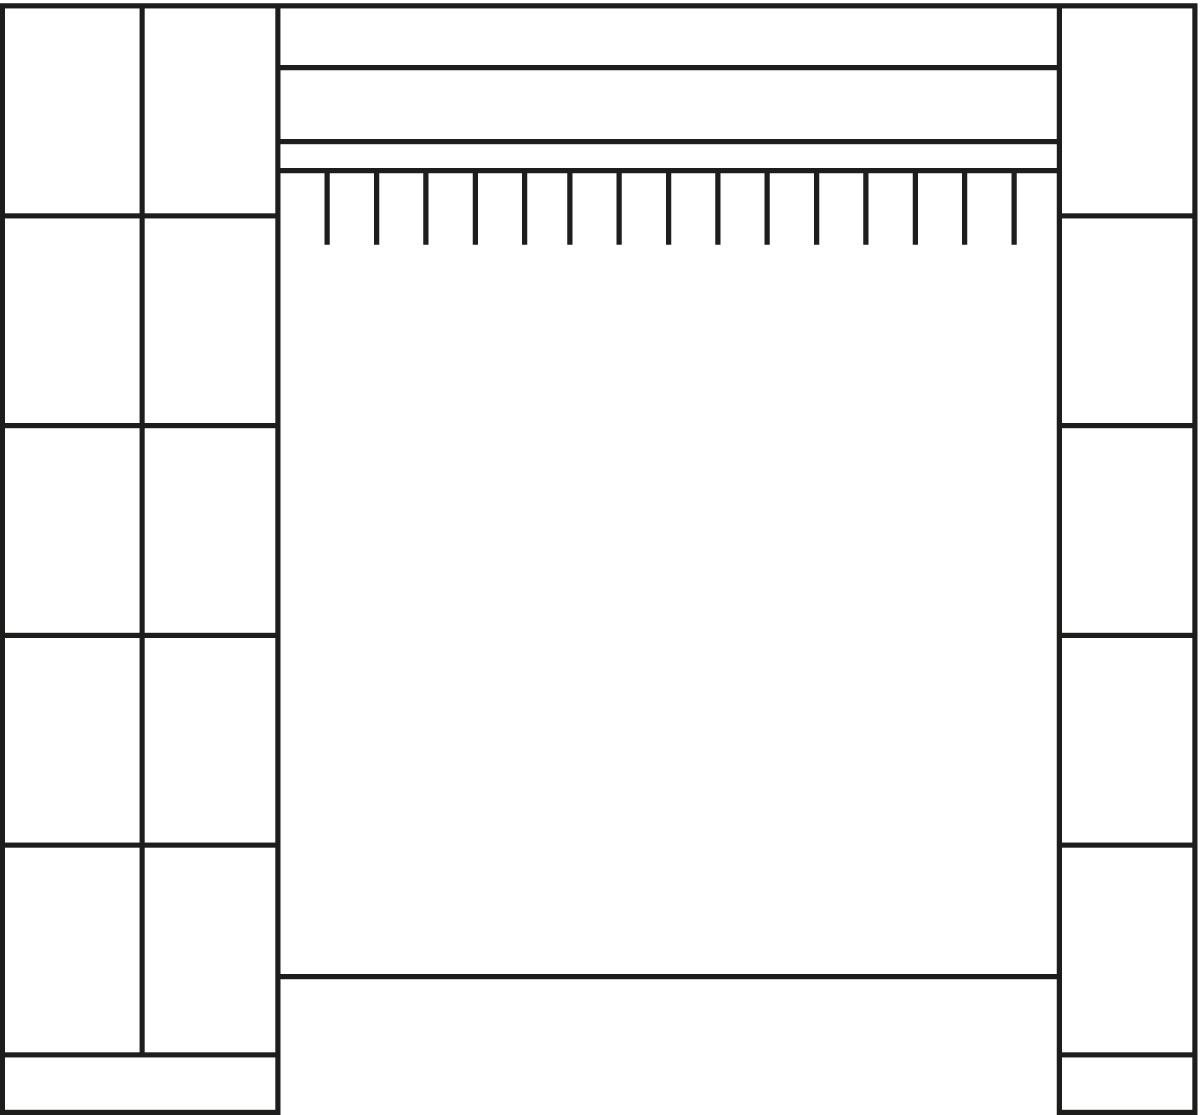 C+P Schließfach-Garderobe Classic mit 15 Fächern, Breite 2760 mm Technische Zeichnung 1 ZOOM